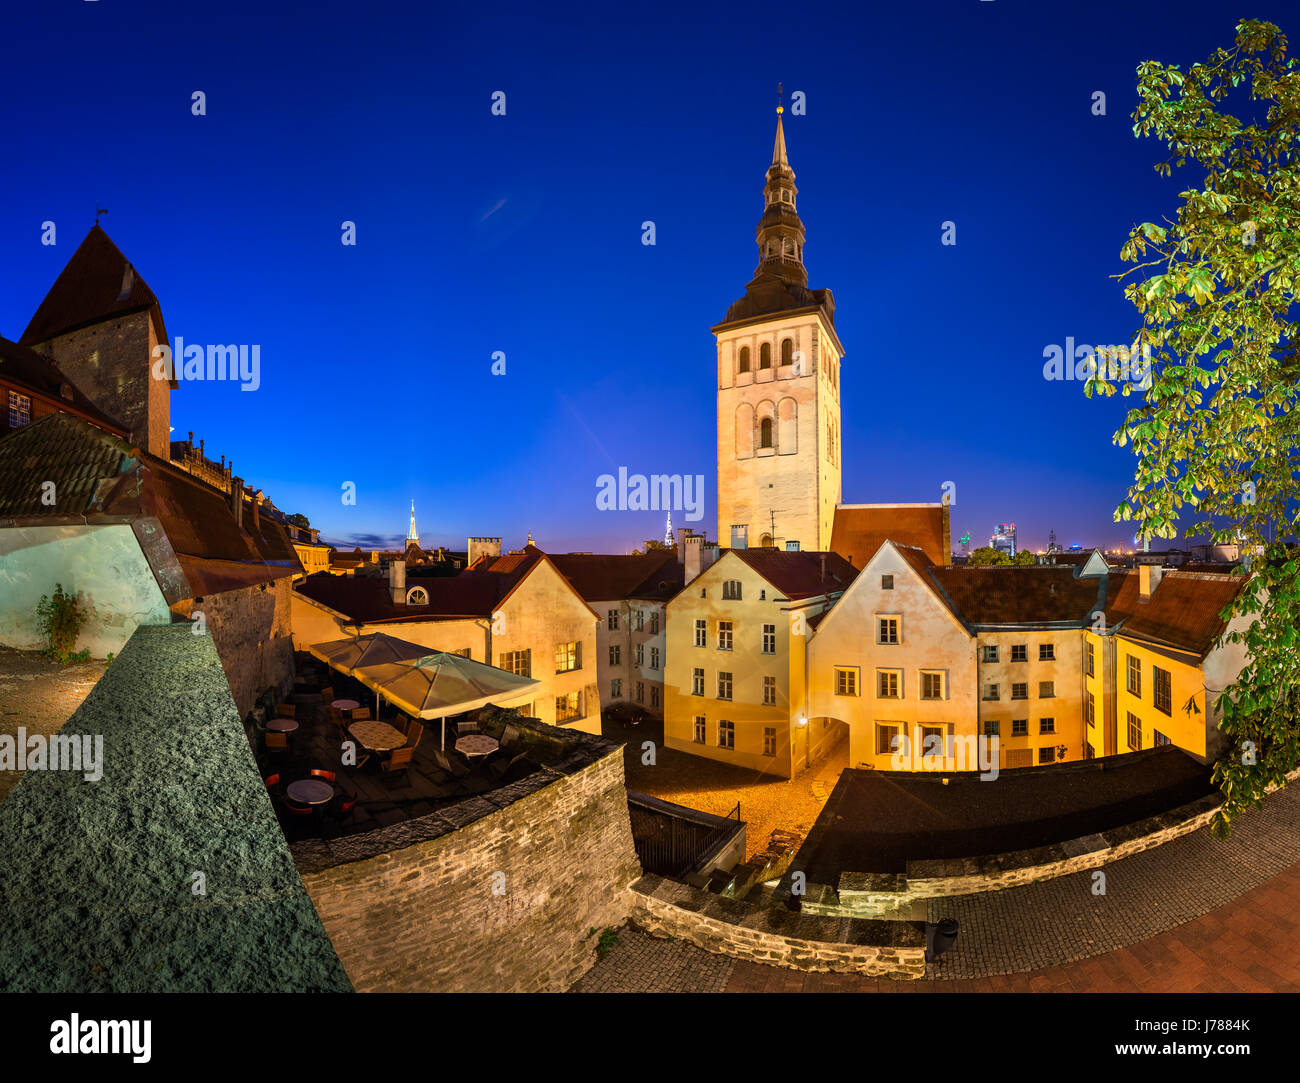 Soir Vue sur la vieille ville et de Saint Nicolas (église Niguliste) à Tallinn, Estonie Banque D'Images